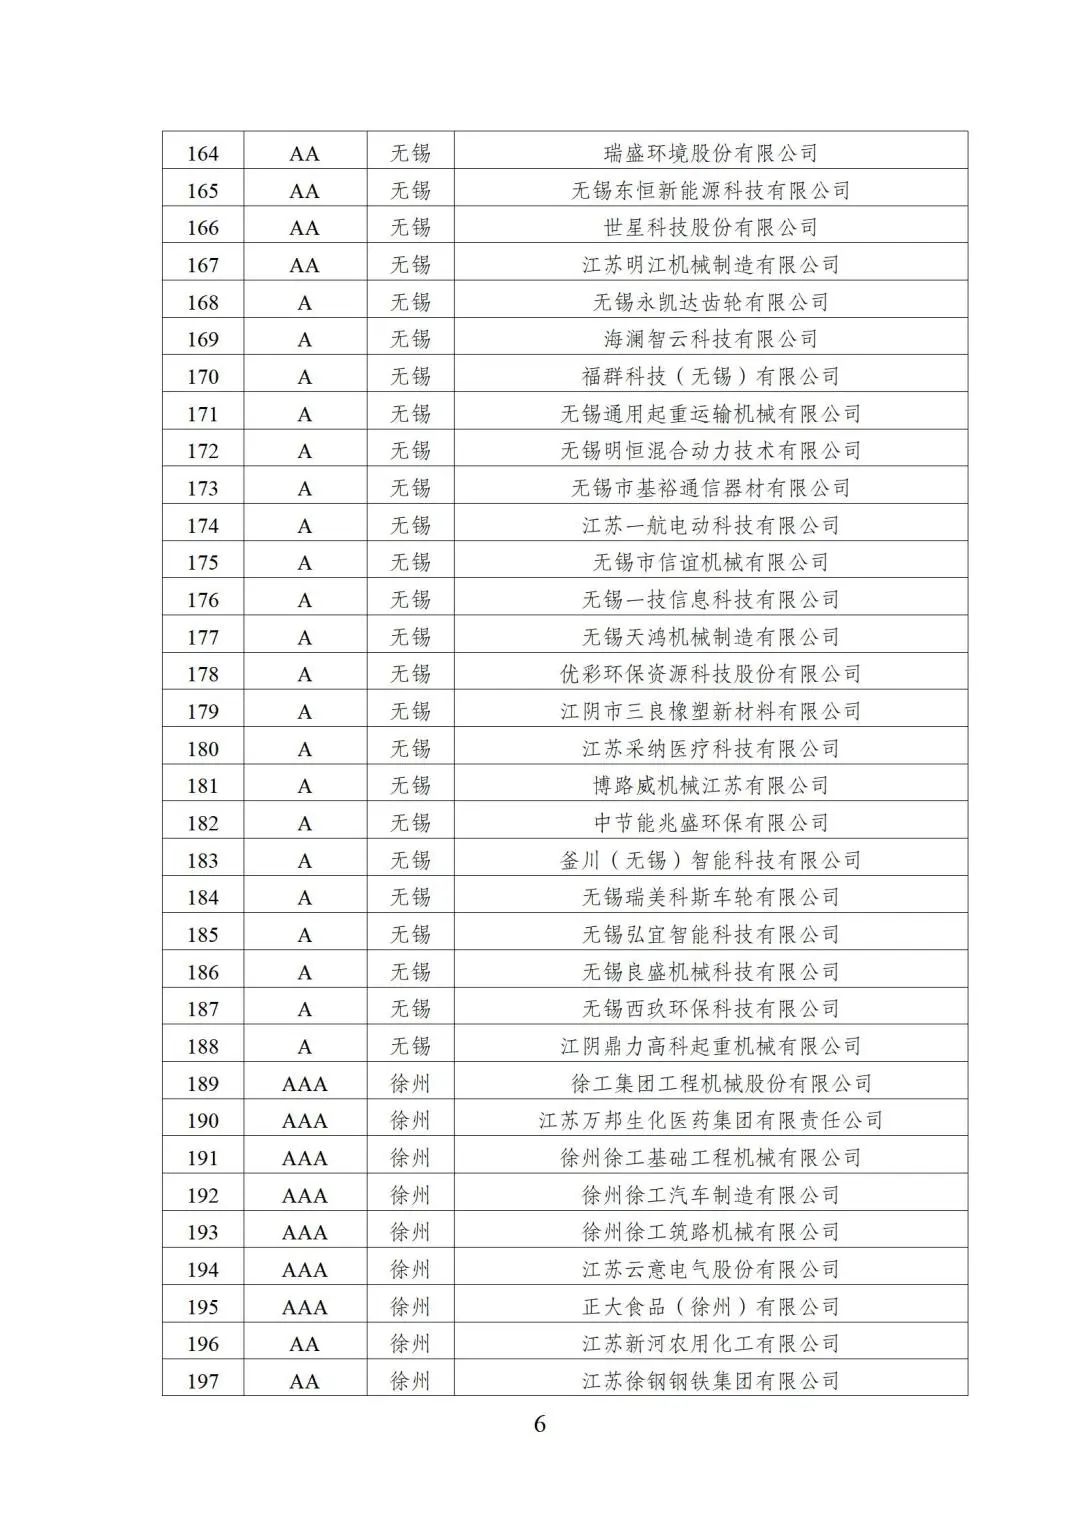 2022年江苏省两化融合管理体系贯标示范企业培育对象名单6.jpg